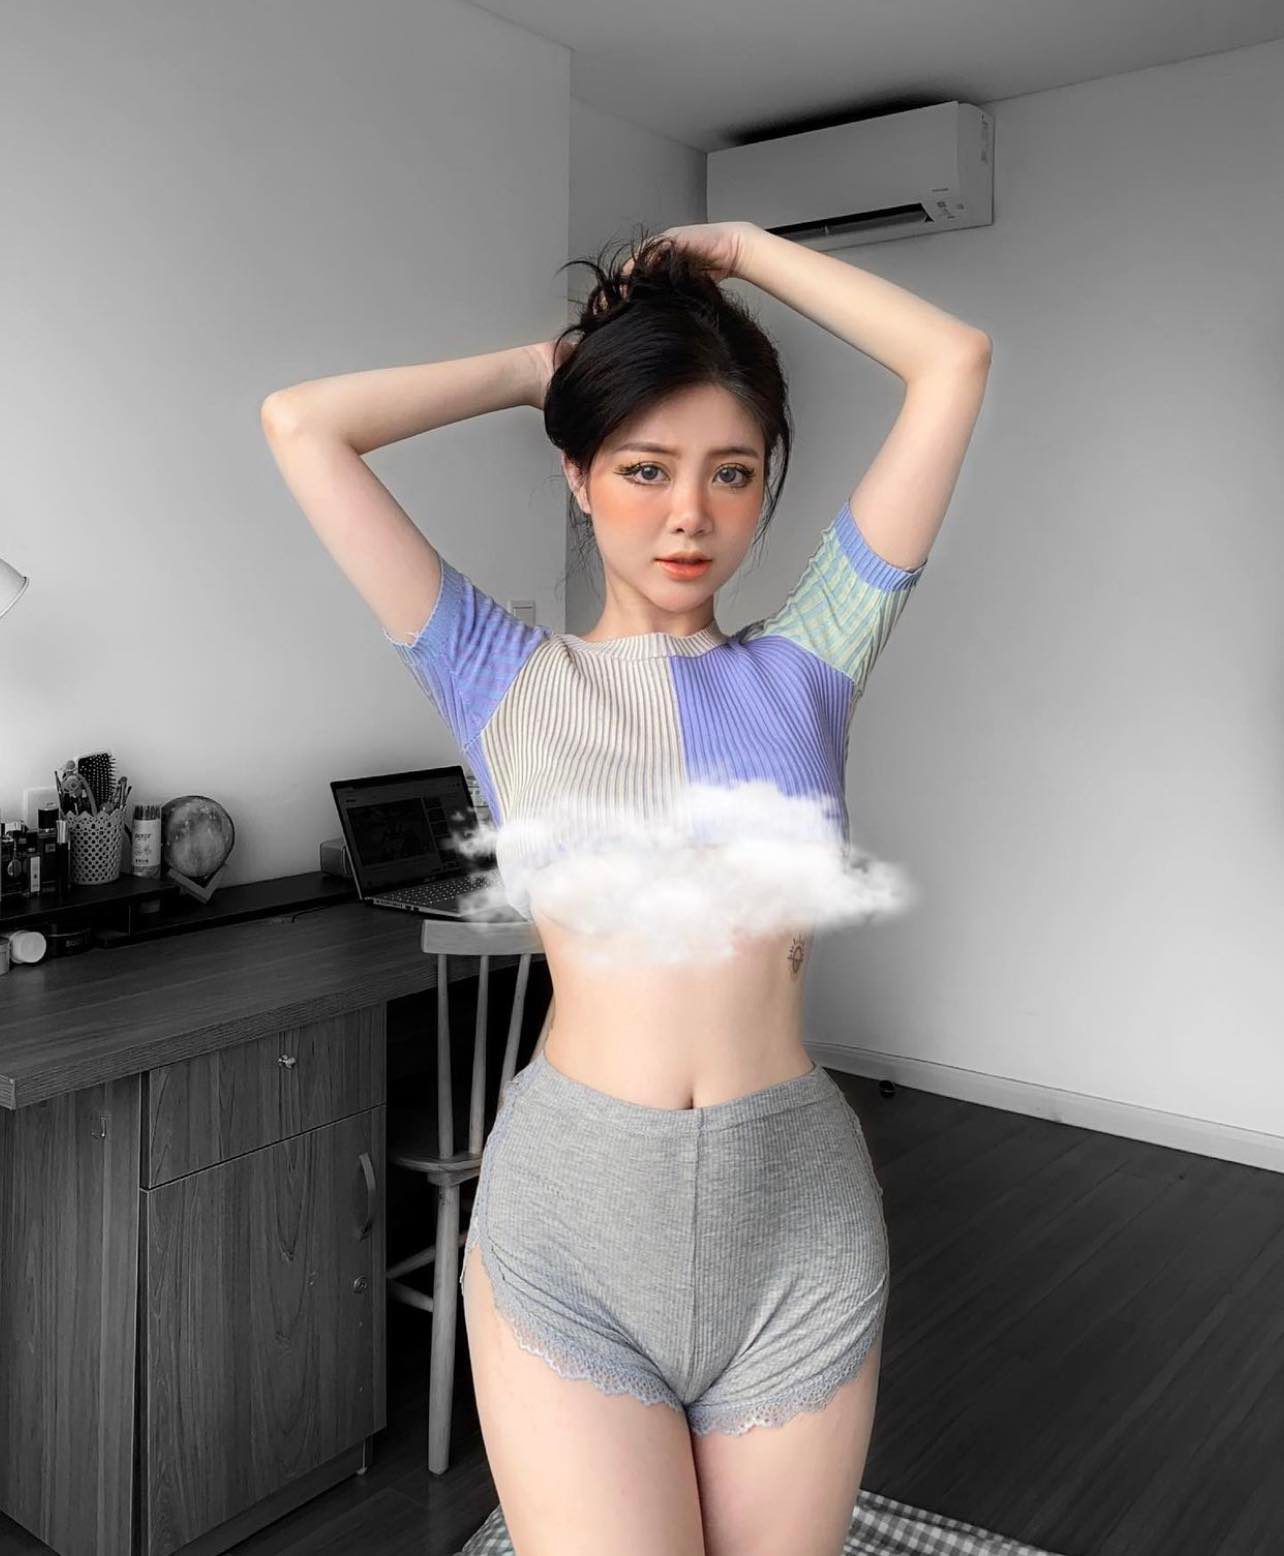 Hot girl Ba Vì “Trang Chuối” gợi cảm với phong cách Lolita, khoe điểm cơ thể hấp dẫn - 1